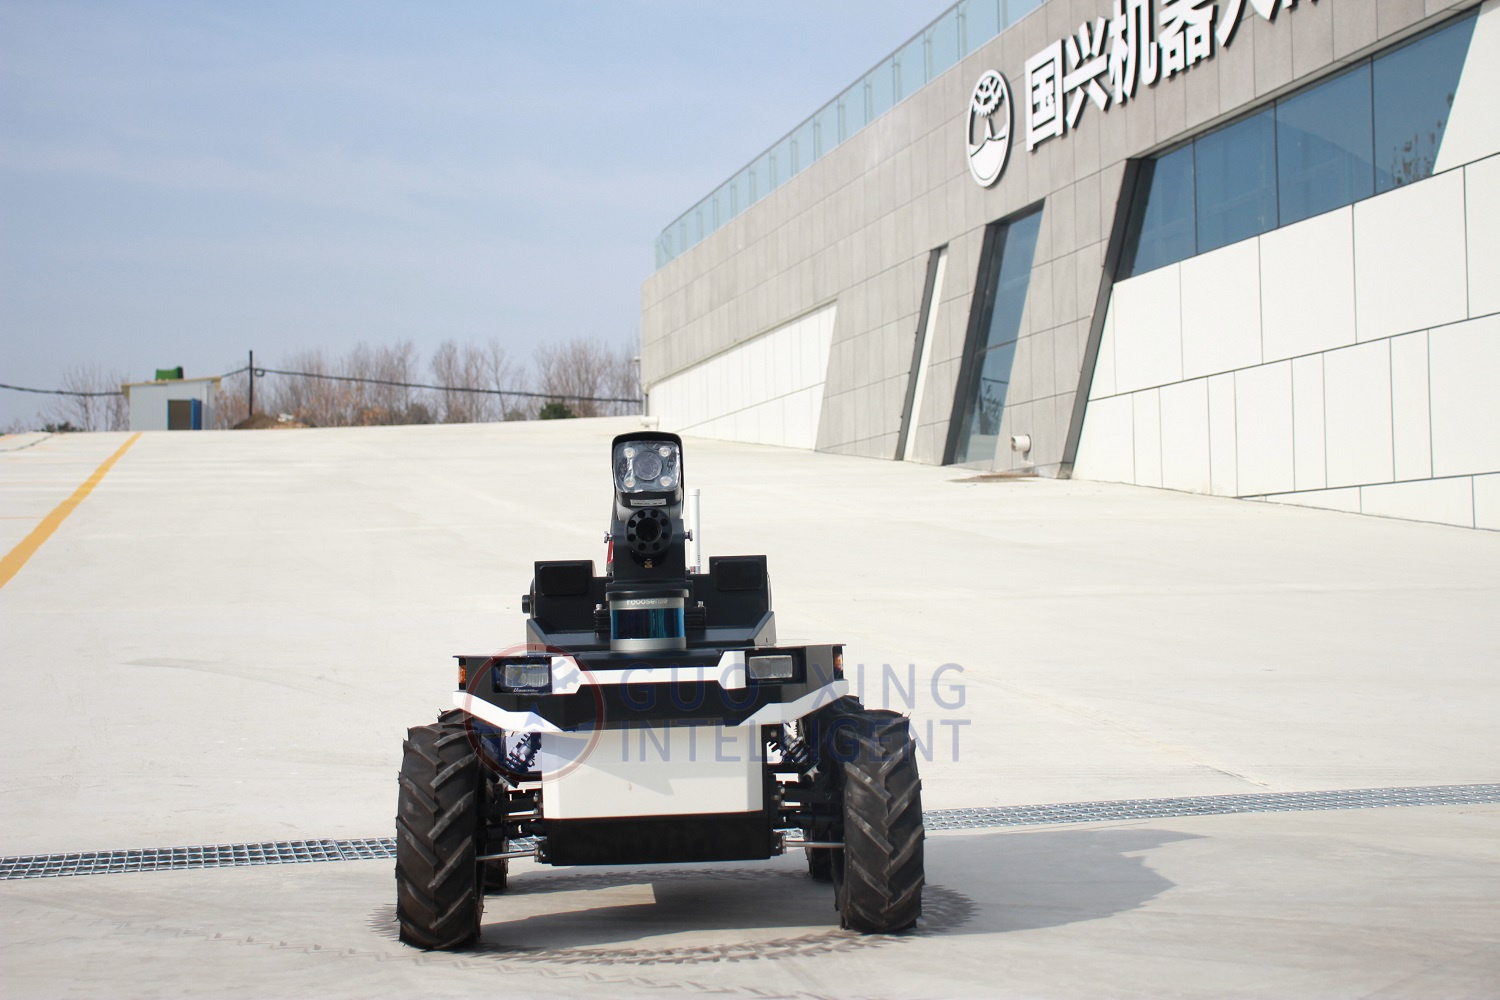 Patrouillenkontrolle für intelligente Roboter im öffentlichen Bereich